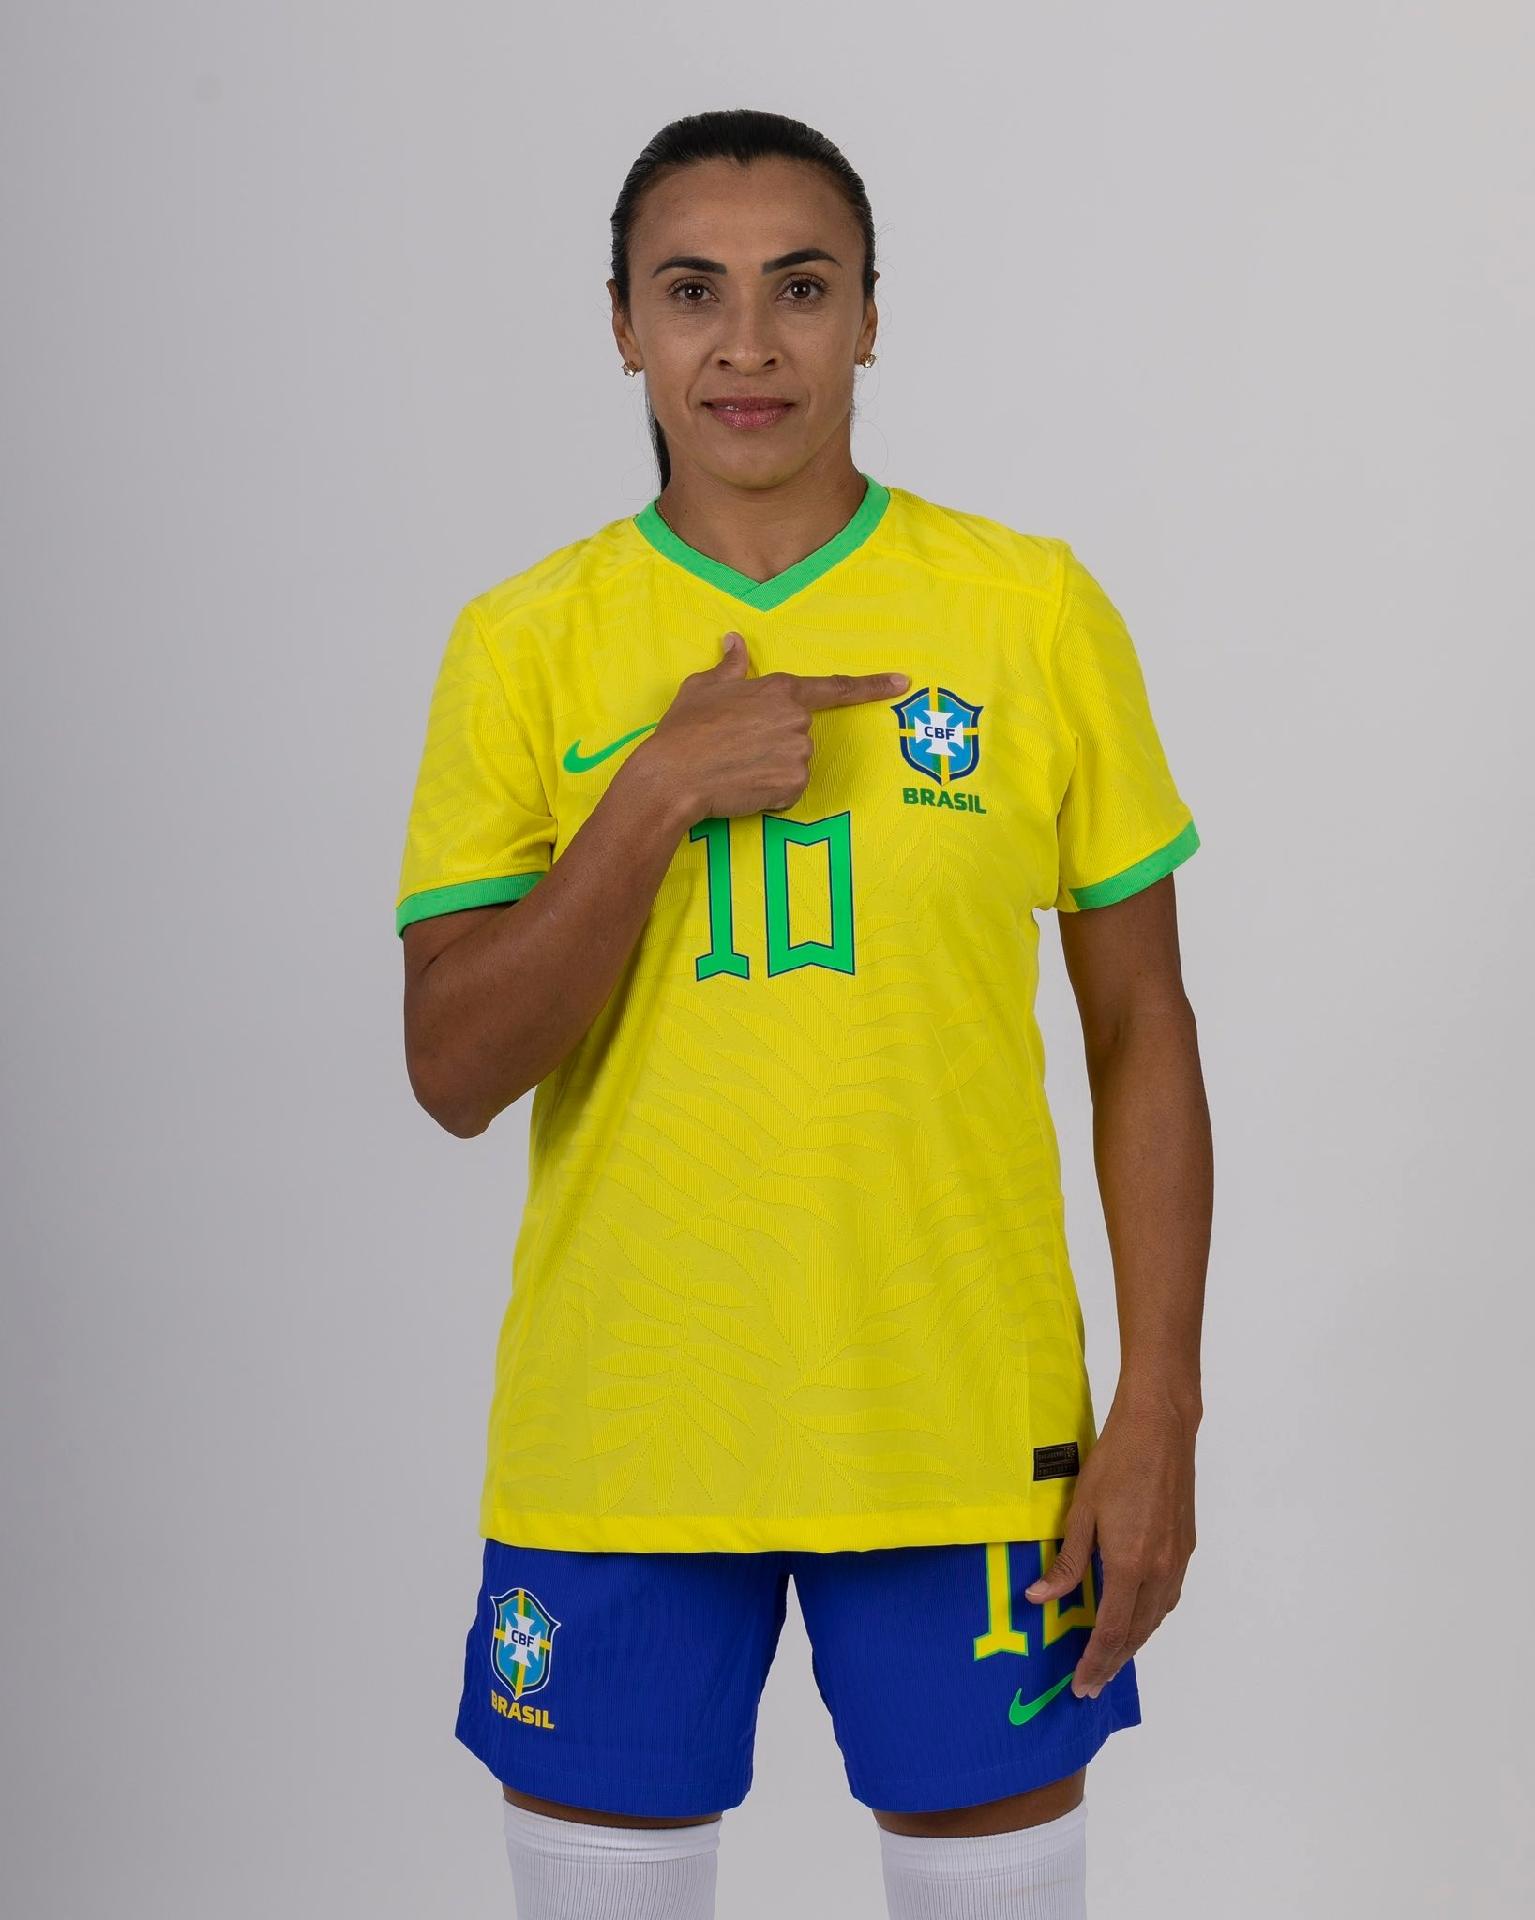 B9  Novo uniforme da Seleção Brasileira Feminina não tem mais as estrelas  de conquistas do time masculino • B9